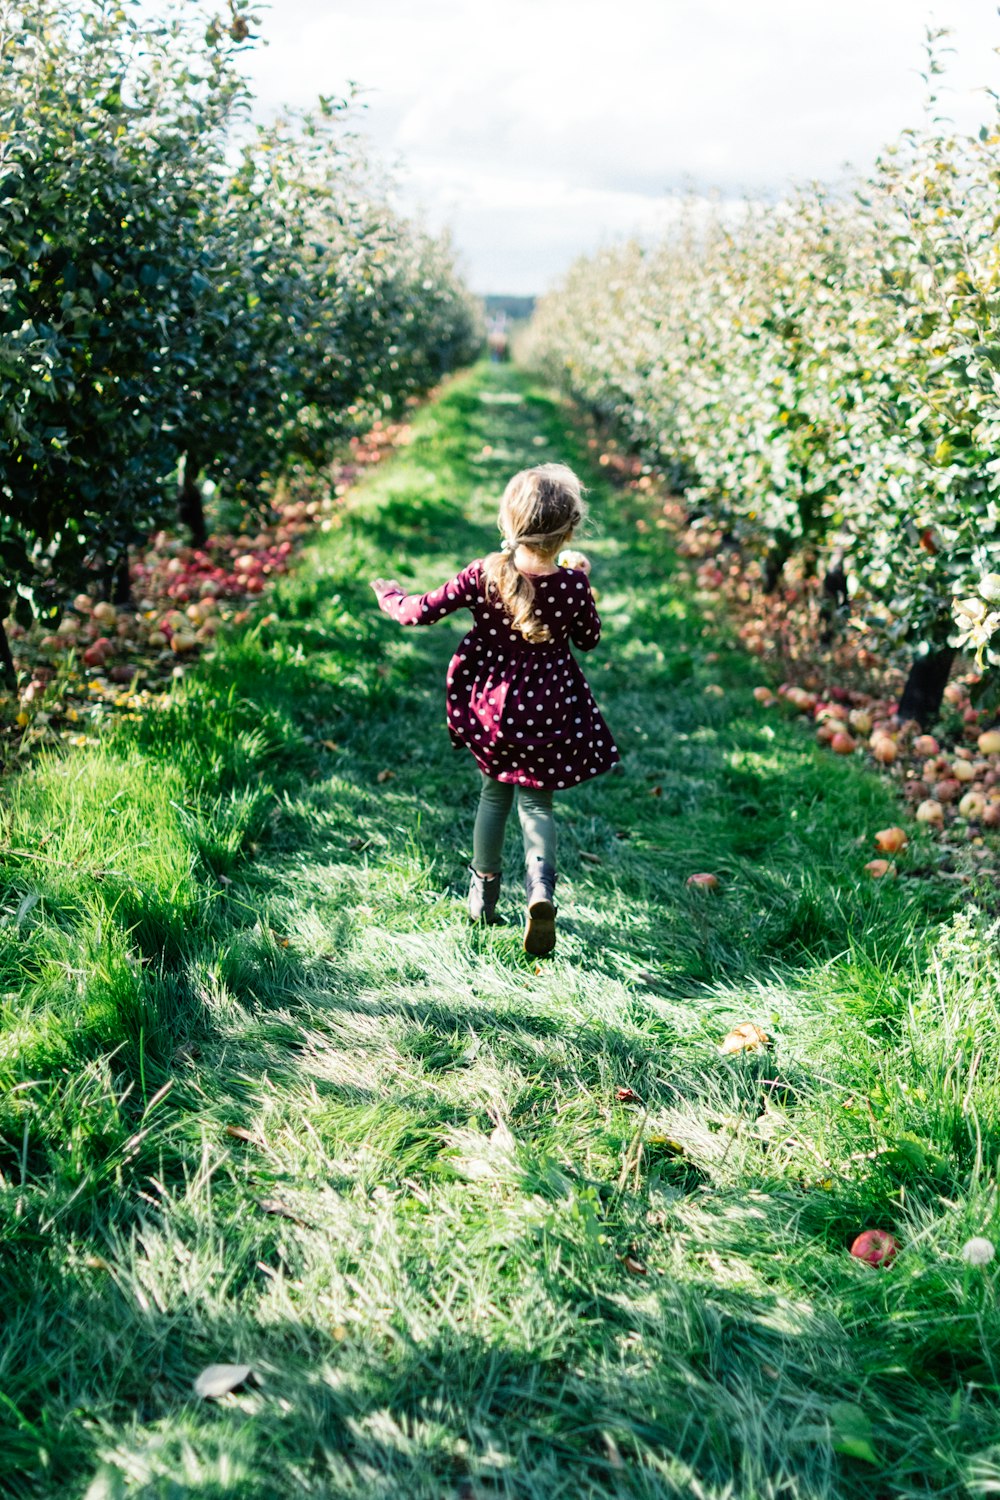 栗色と白い水玉模様のドレスを着た女の子が草の小道を走っている